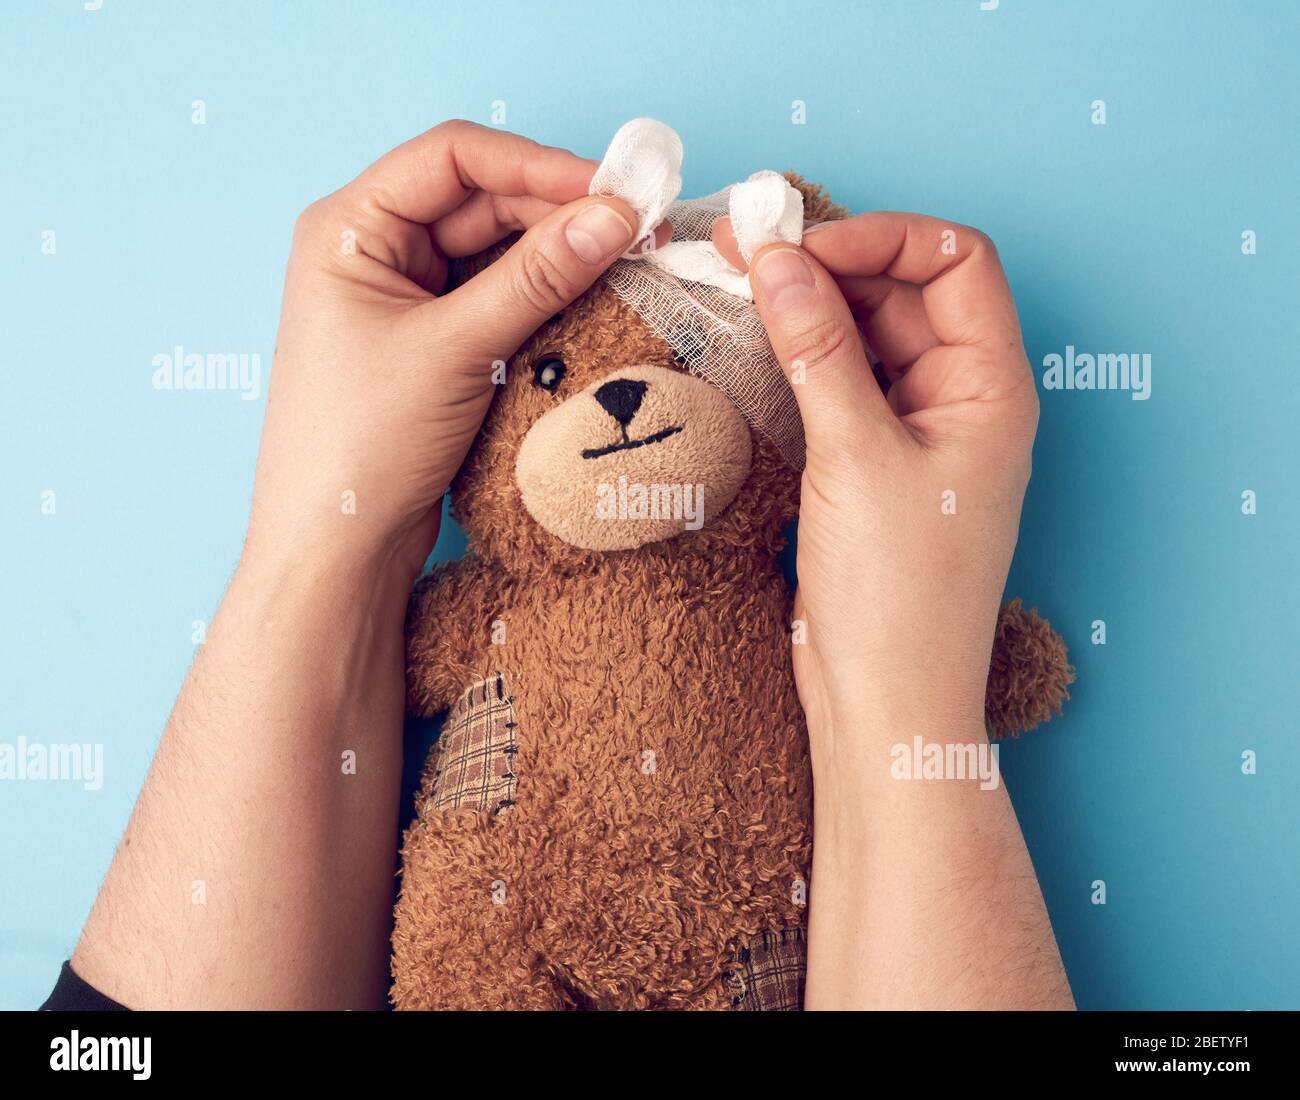 deux mains rembobinent la tête avec une gaze blanche bandage médical à un ours brun en peluche, assistance médicale Banque D'Images